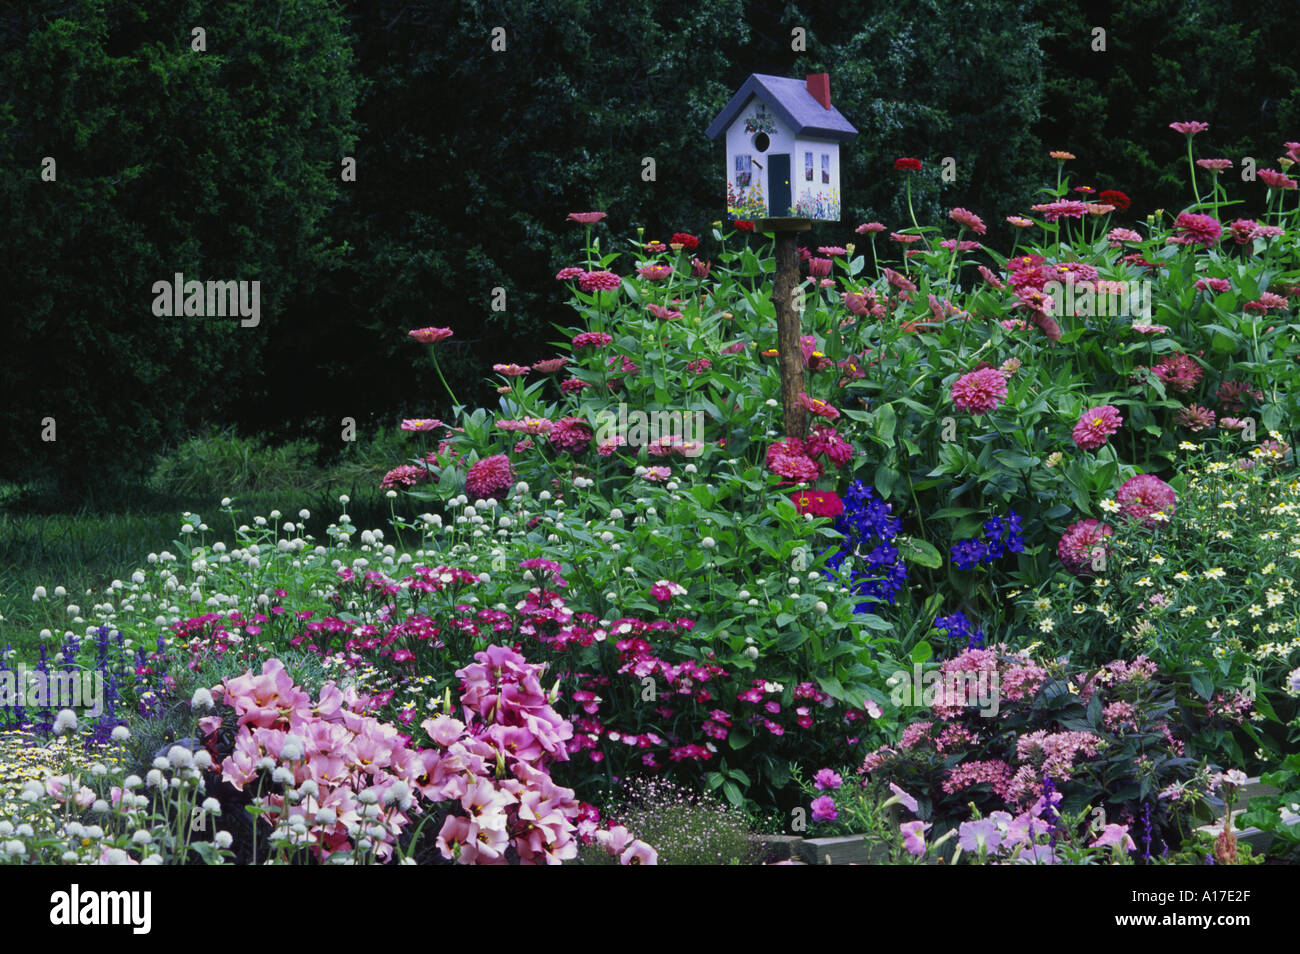 Einzigartige handbemalte birdbox als malerisches kleines Haus in einem blühenden Garten in Pastelltönen mit passenden Rosa Blau steht, und weiße Blumen, Missouri, USA Stockfoto